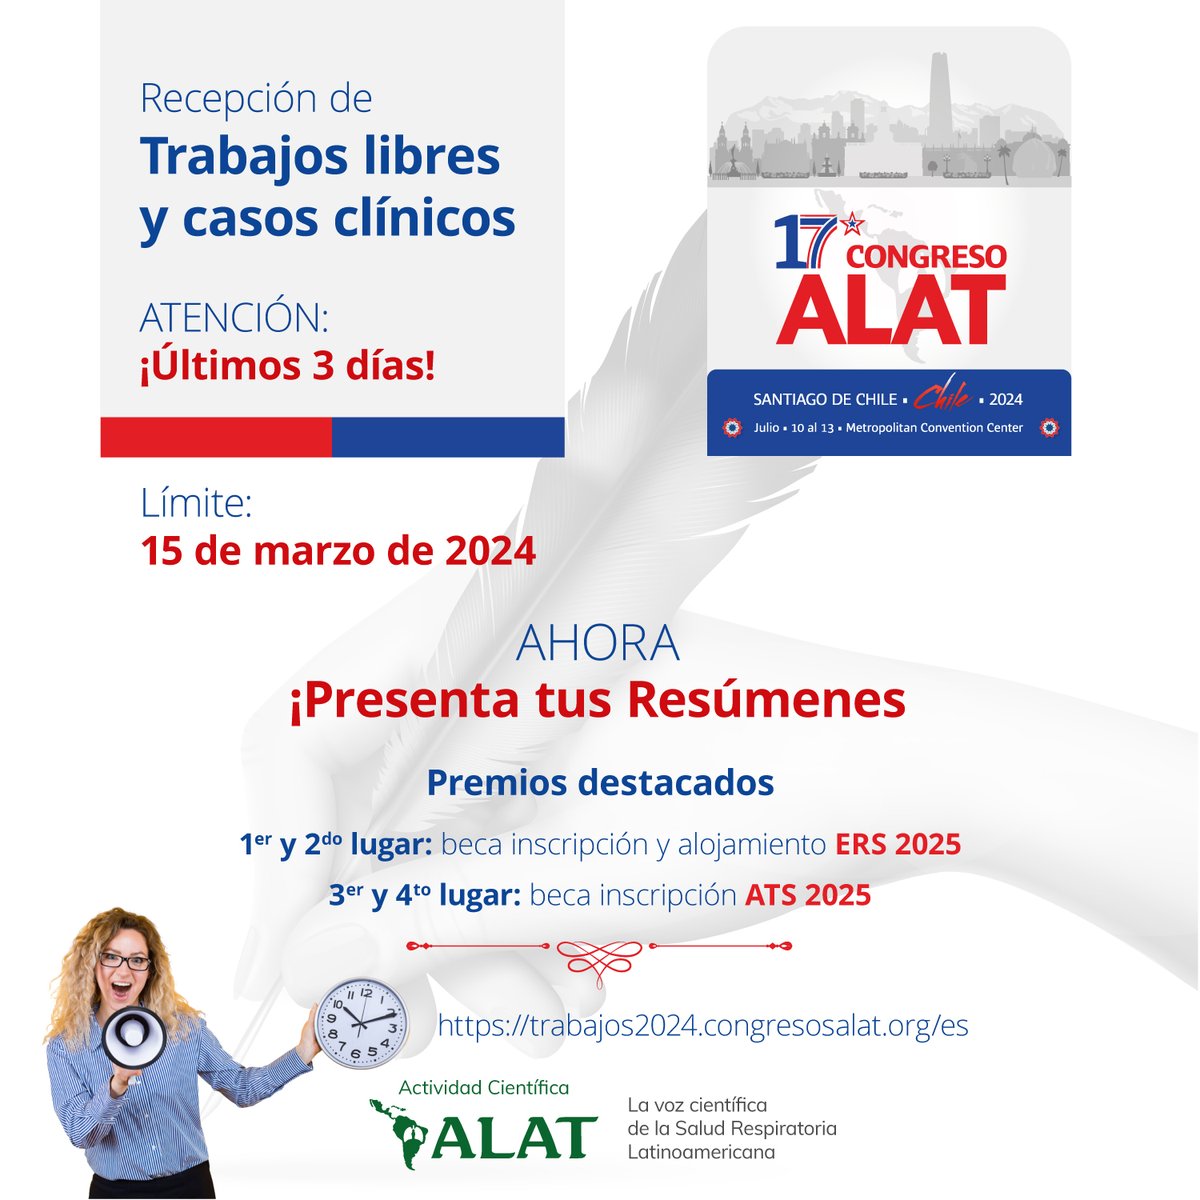 #ALAT2024 #LatinoaméricaInspira #ALATChile2024 #Chile #Neumología #CirugíaTorácica #SaludRespiratoria 🫁 ¡Esperamos tus Trabajos! Cierre: 15 marzo 2024 ¡Participa con tus mejores aportes junto a la mayor comunidad respiratoria latinoamericana! trabajos2024.congresosalat.org/es